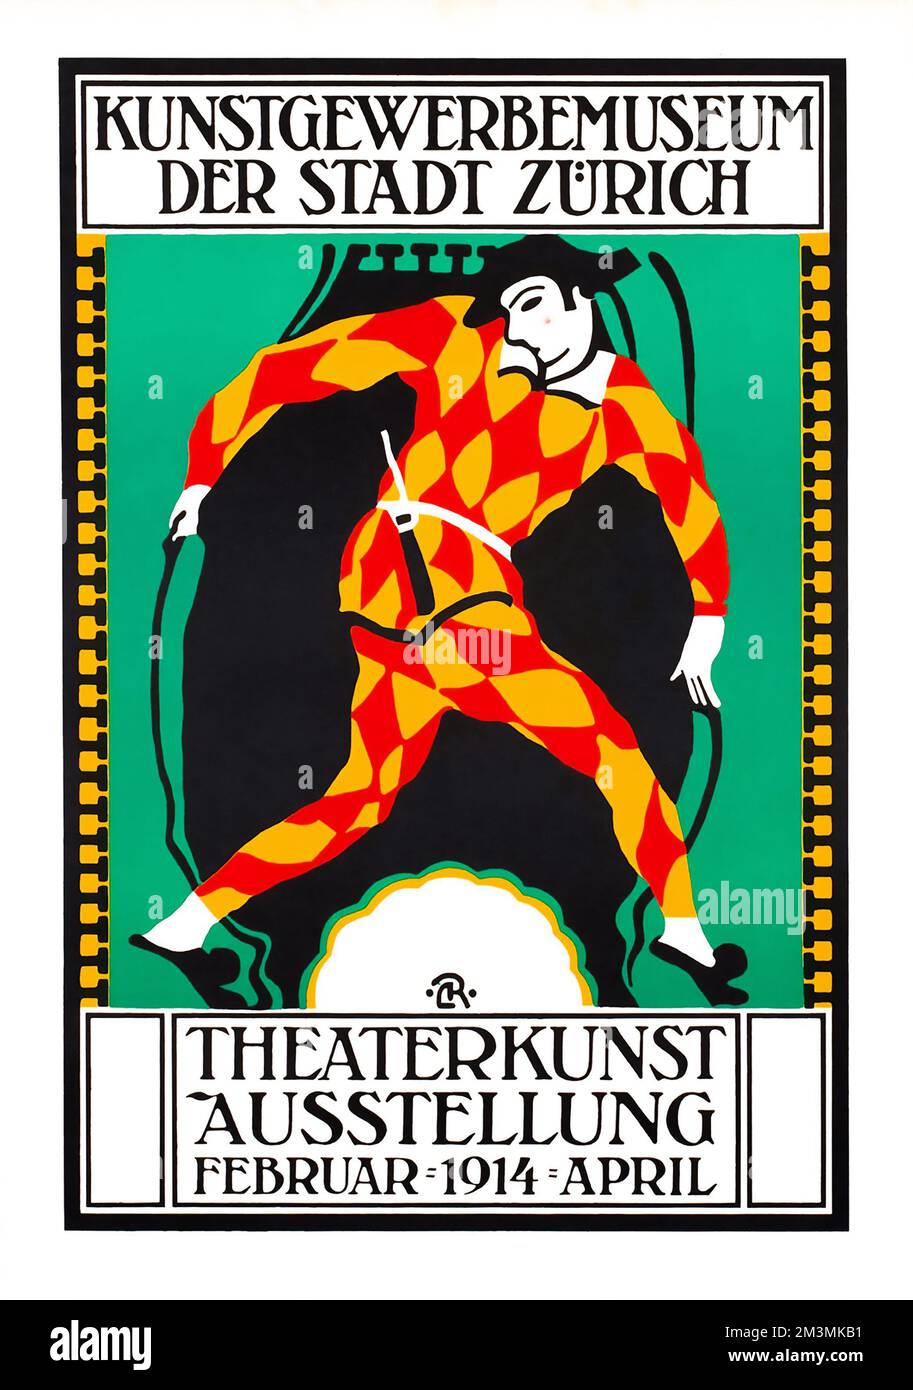 Theatre poster - Carl Roesch - Theaterkunst Austellung - Zurich - Theater Exhibition Harlequin Poster, Februar 1914 - Schweiz, Suisse, Switzerland - r Stock Photo